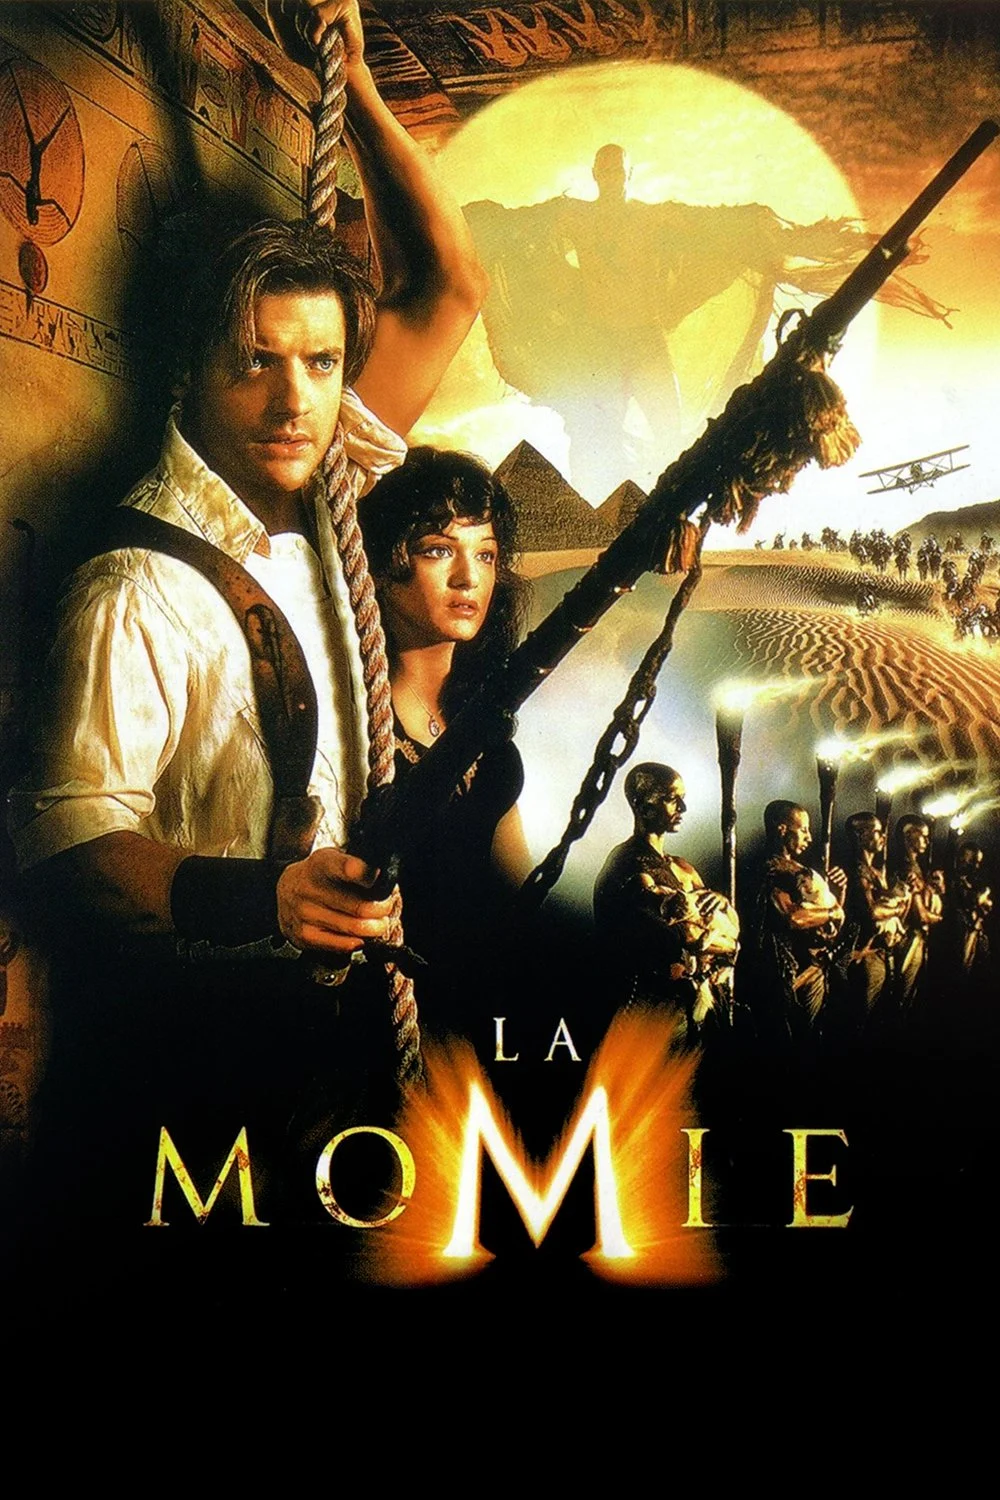 La Momie (Integrale) MULTI HDLight 1080p 1999-2008